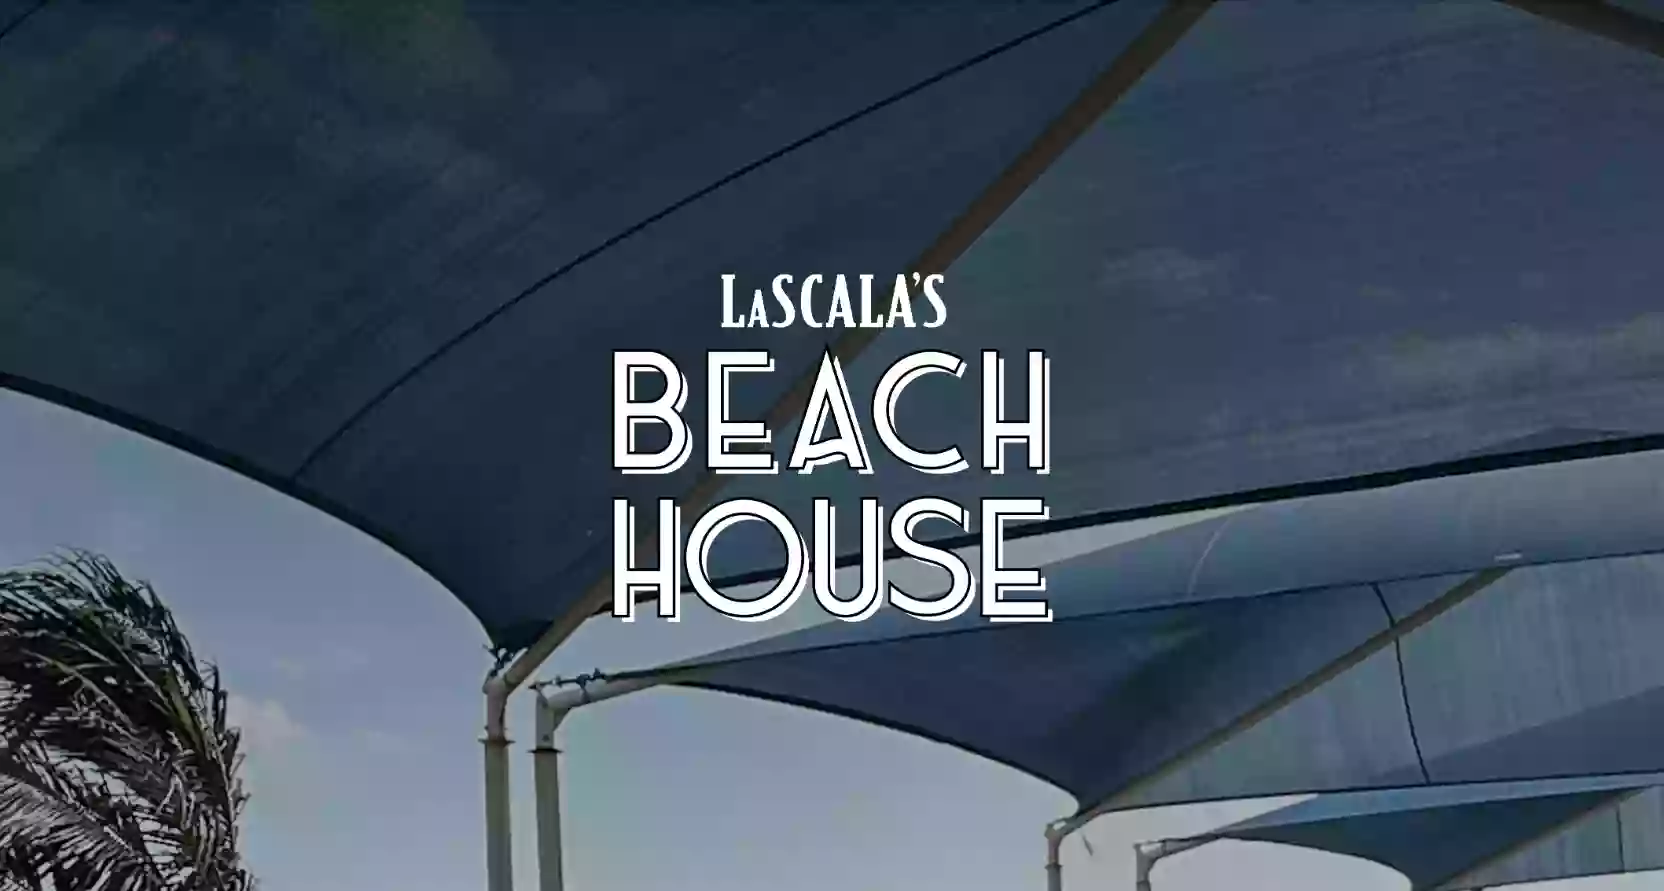 LaScala's Beach House